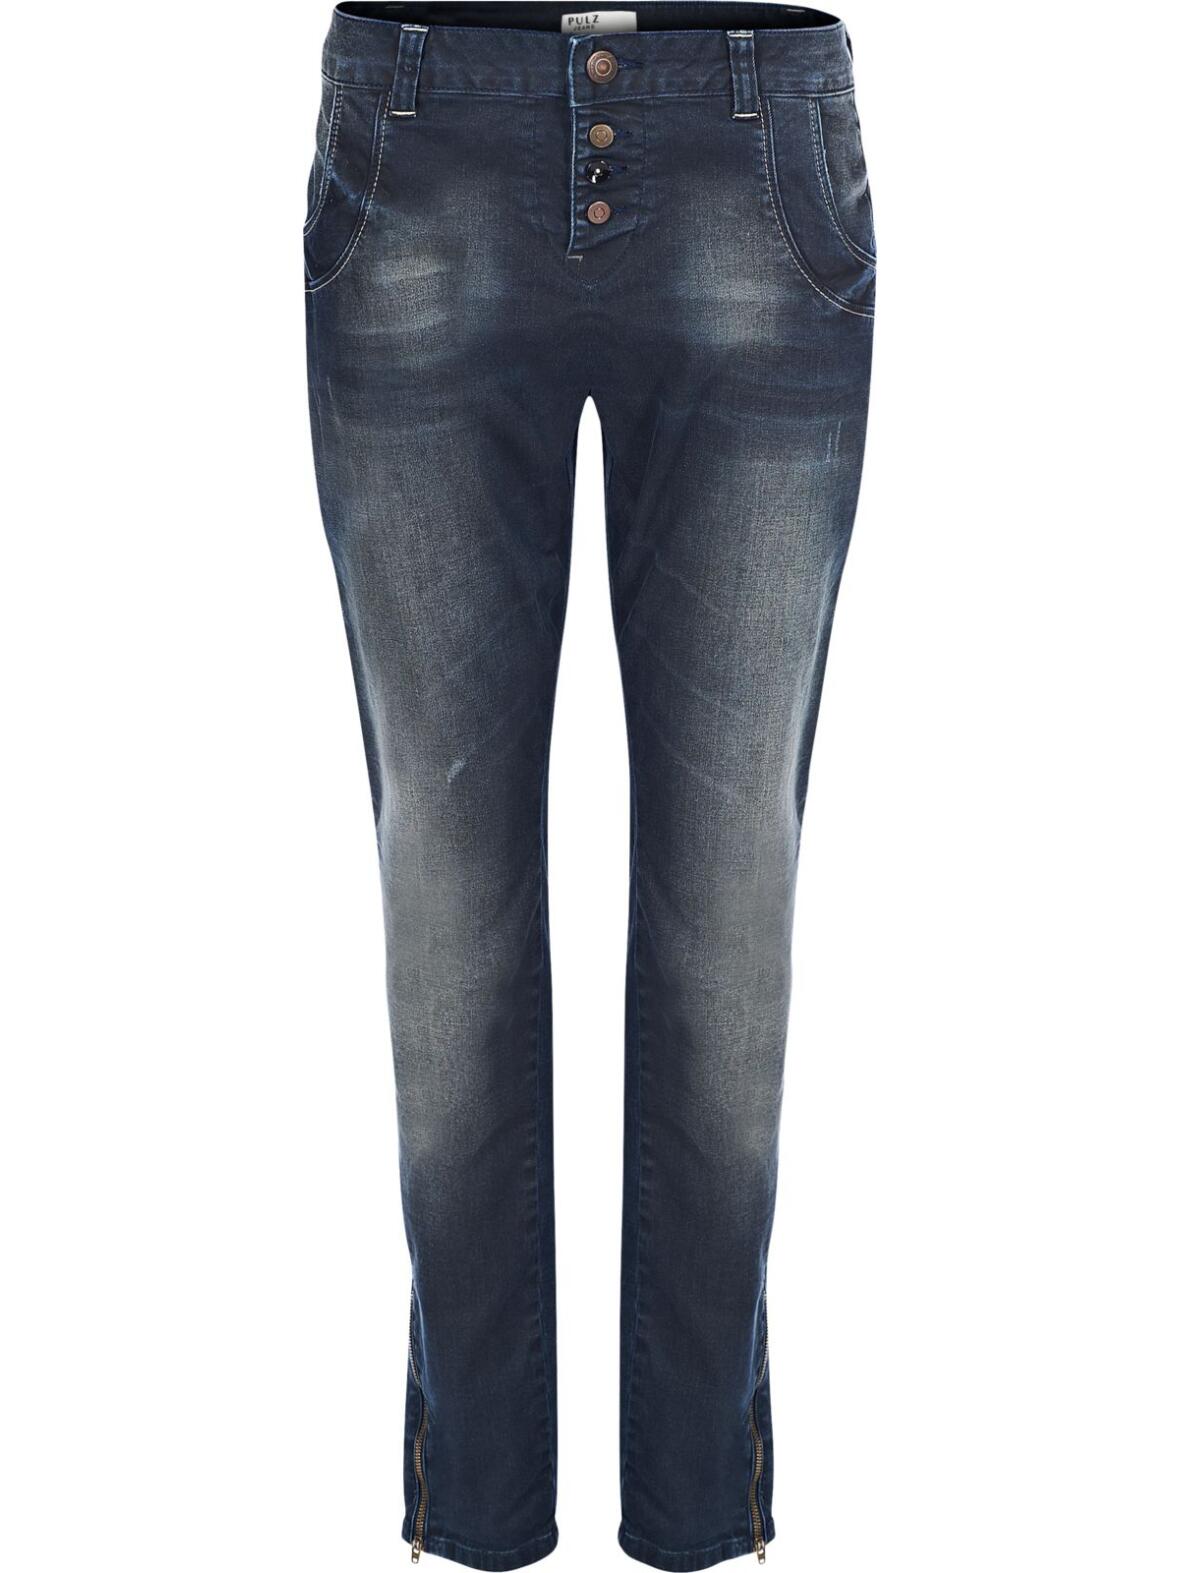 Boutique - Pulz jeans